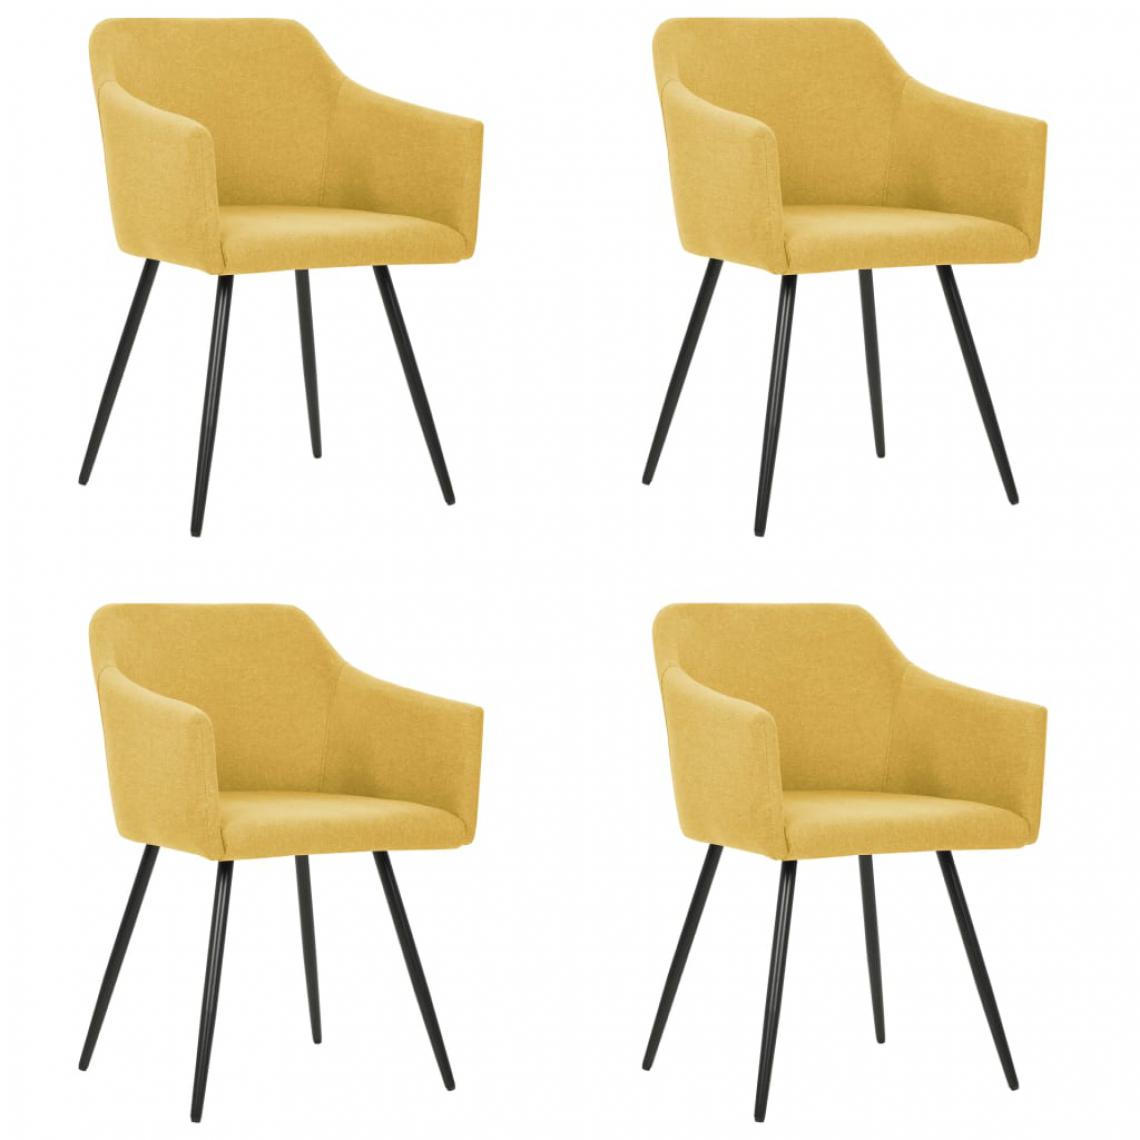 Icaverne - Moderne Fauteuils et chaises serie Madrid Chaises de salle à manger 4 pcs Jaune Tissu - Chaises